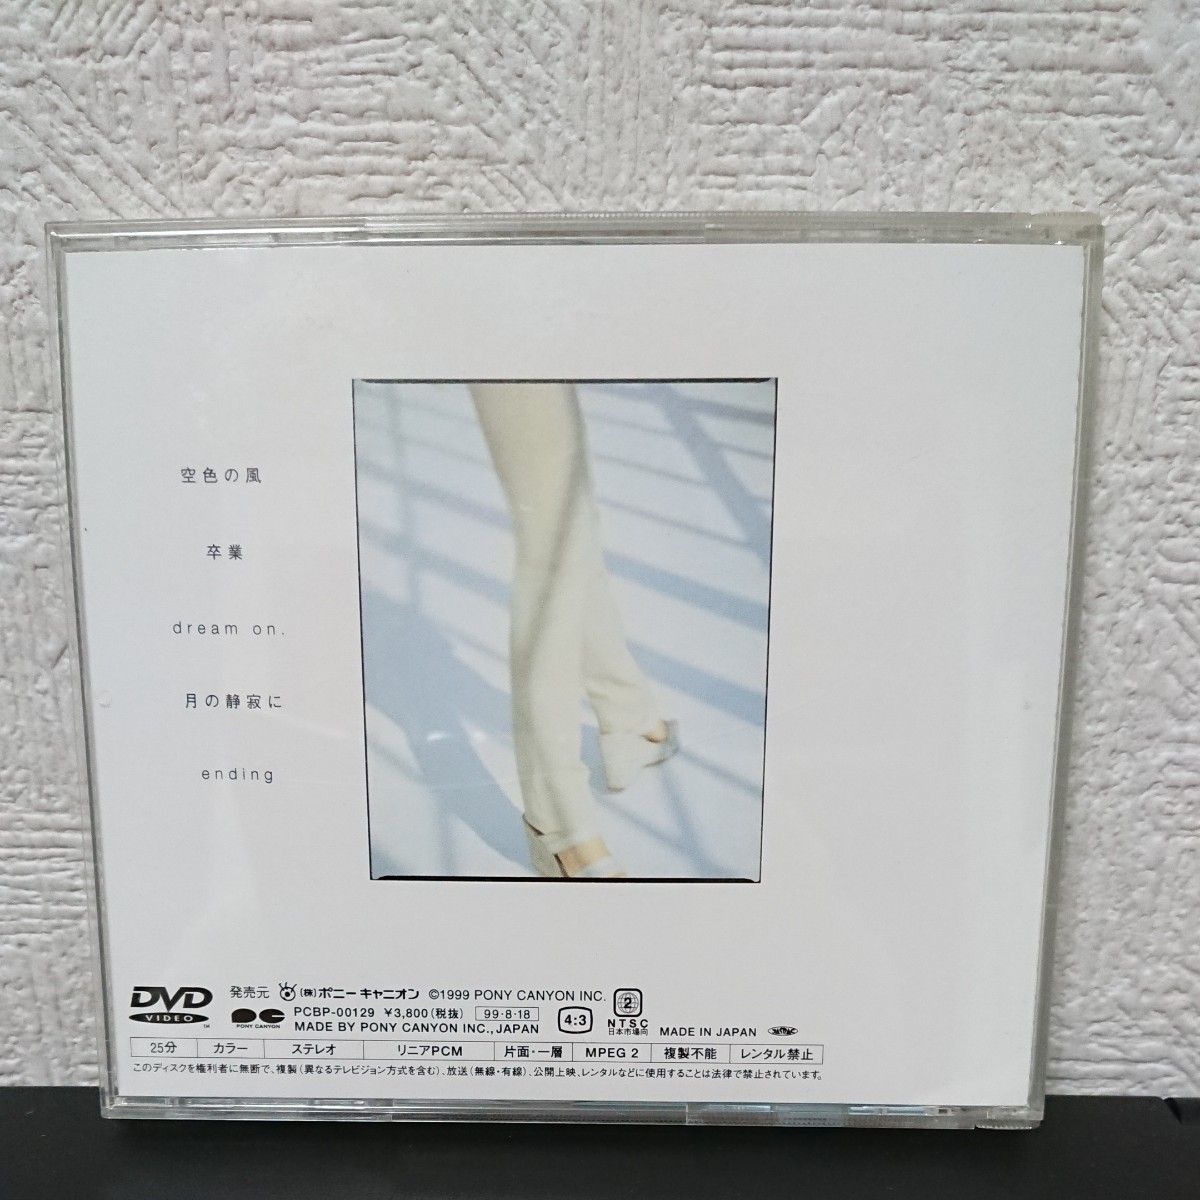 (DVD) 岩男潤子/alive films [DVD] (管理番号:280685)